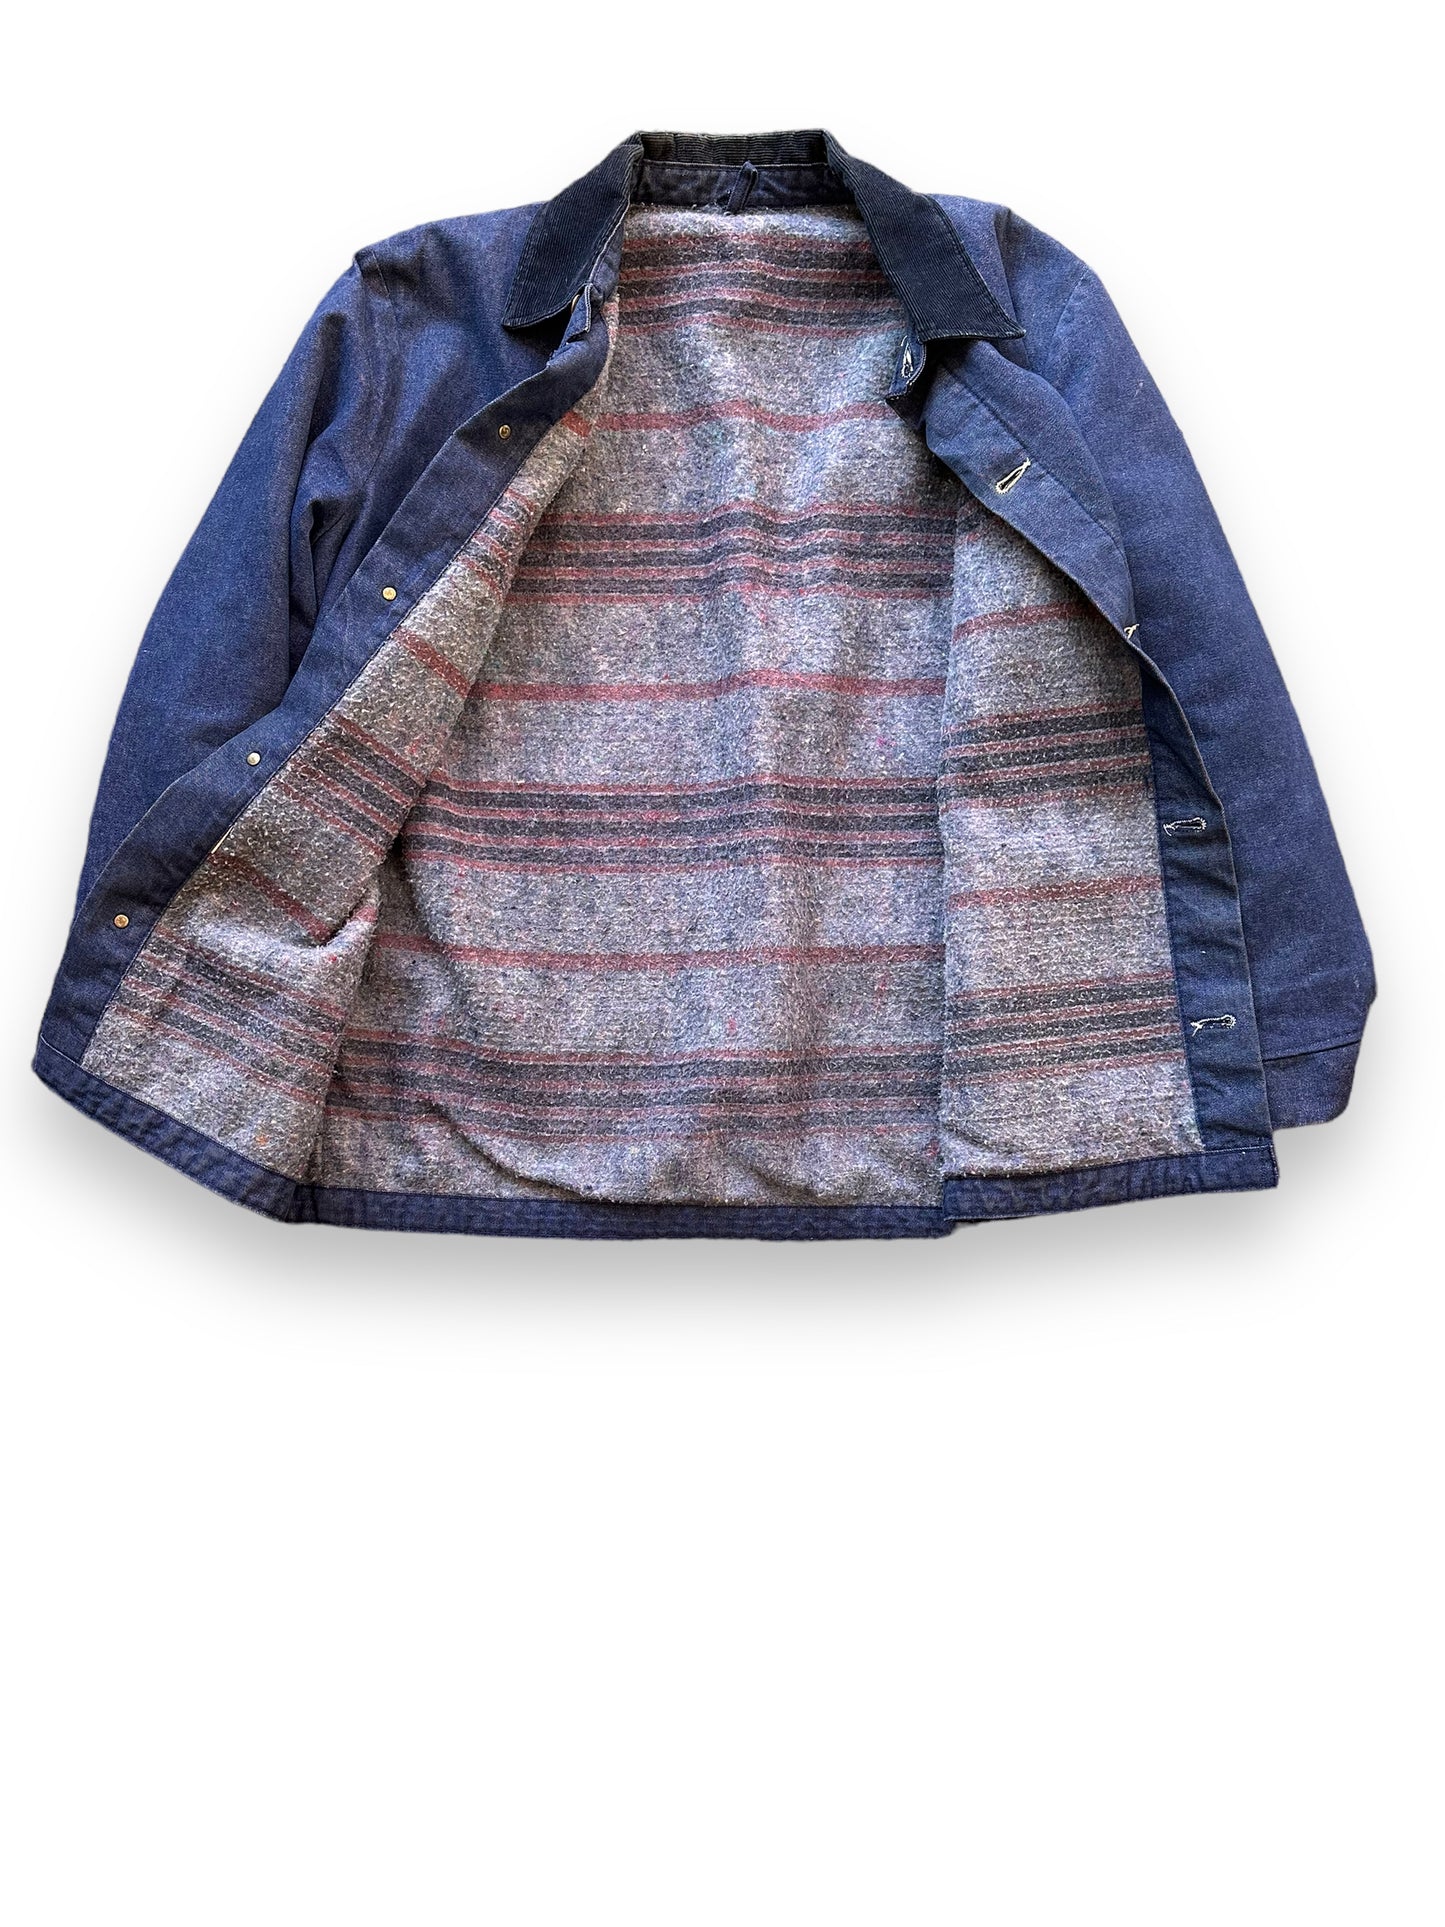 Blanket Lining on Vintage Blanket Lined Denim Chore Coat SZ L | Vintage Denim Chore Coat | Barn Owl Vintage Seattle